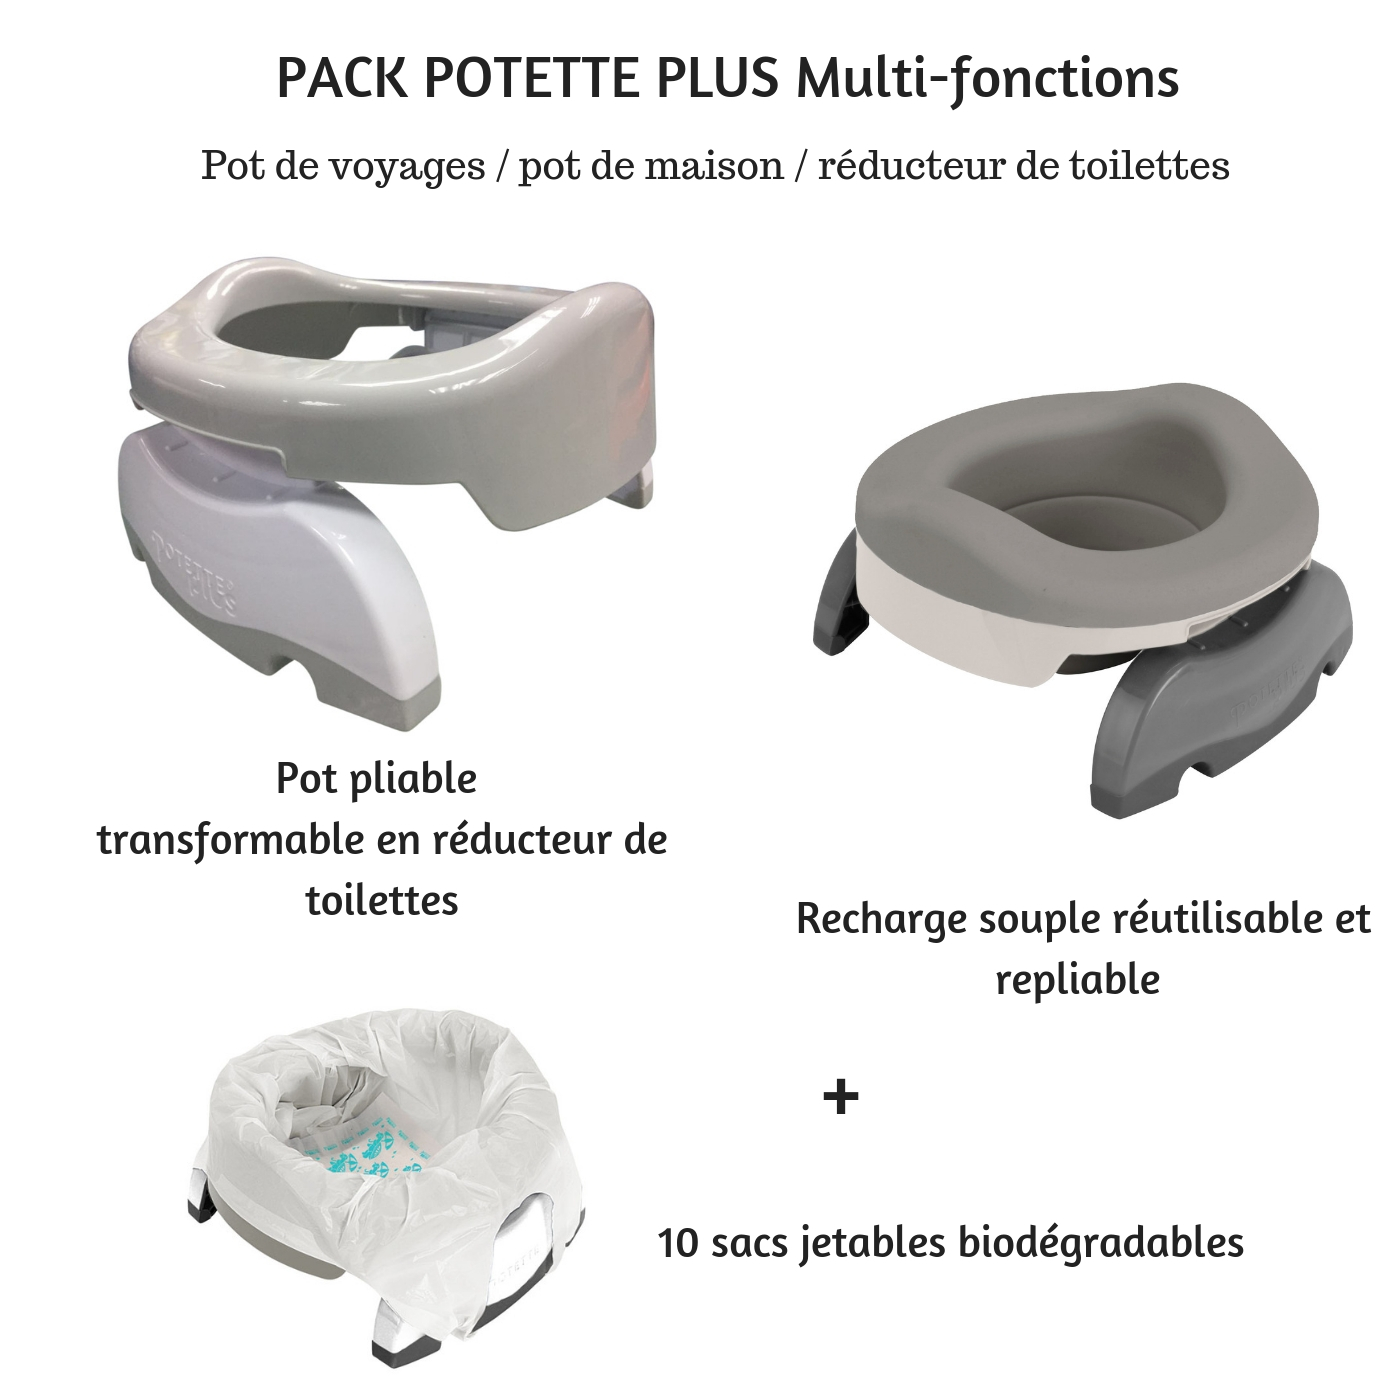 POT BÉBÉ 3 en 1 Pliable Portable Modulable Pot Voyage Enfant 12-36 Mois  Gris EUR 39,99 - PicClick FR